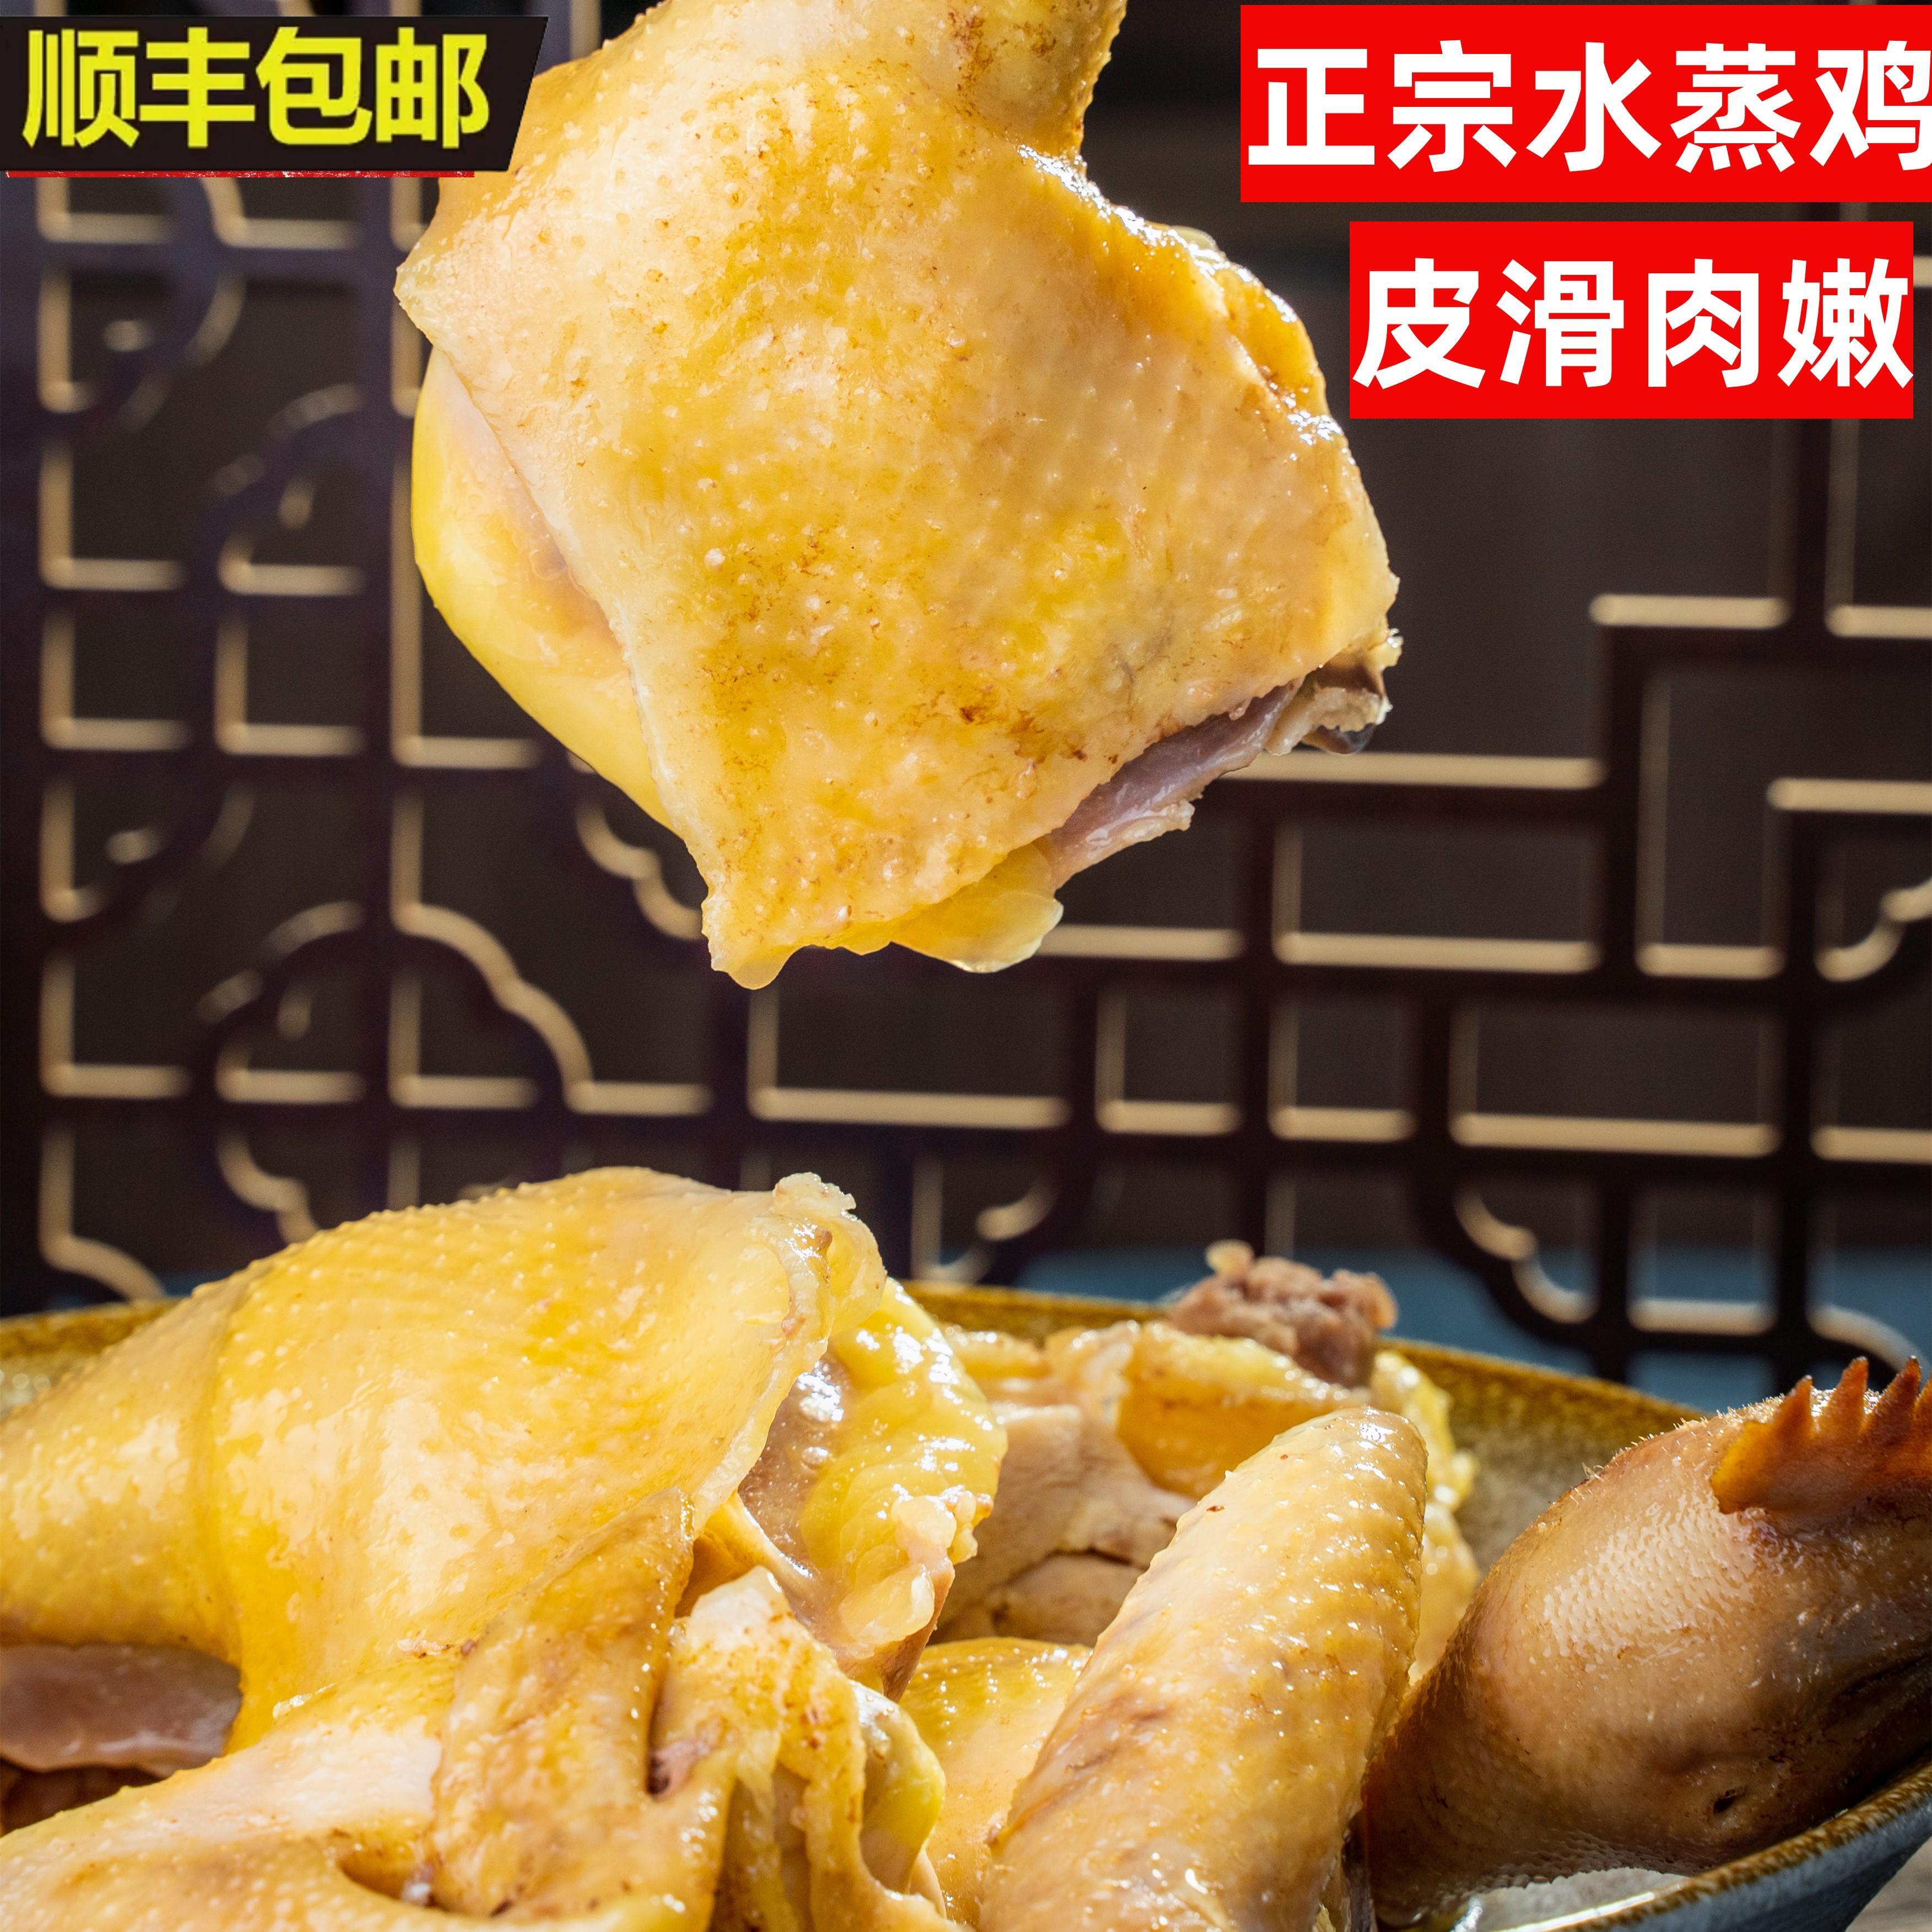 广东化州笪桥罗亚发整只水蒸鸡新鲜在家冷冻鸡胸肉鸡腿鸡爪水晶鸡